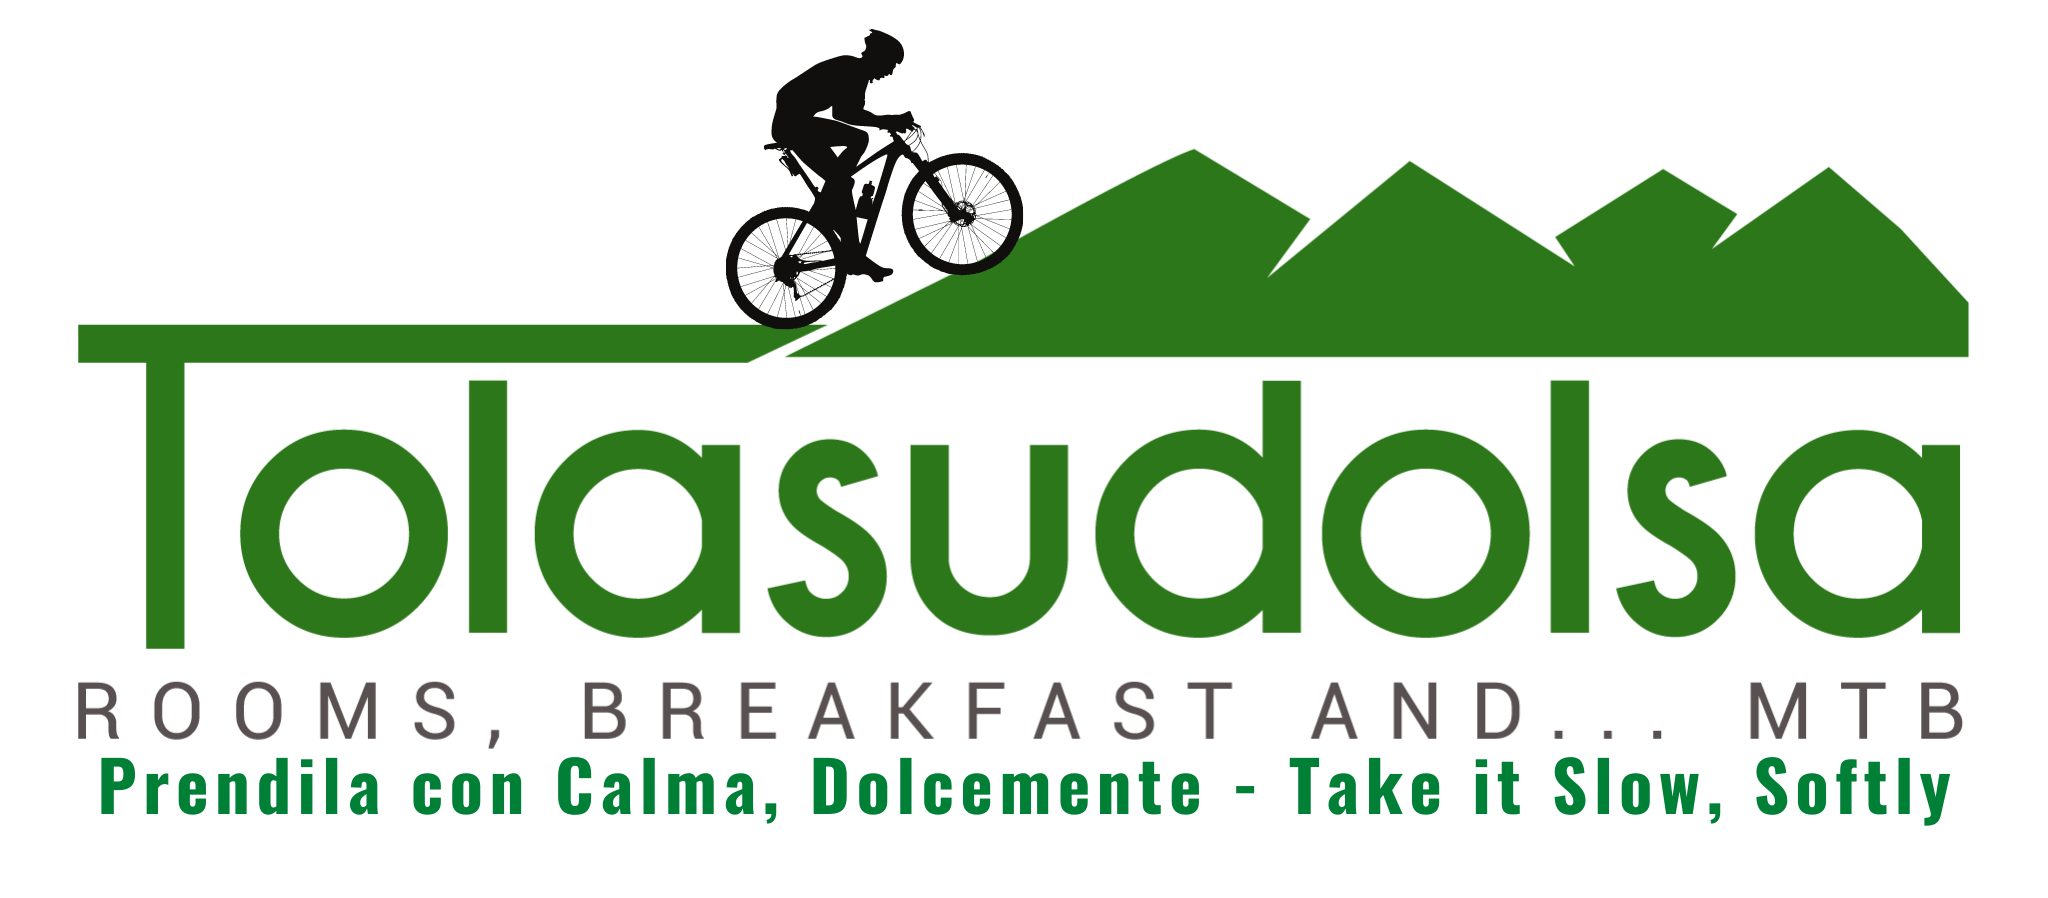 Nuovo logo Tolasudolsa, col motto